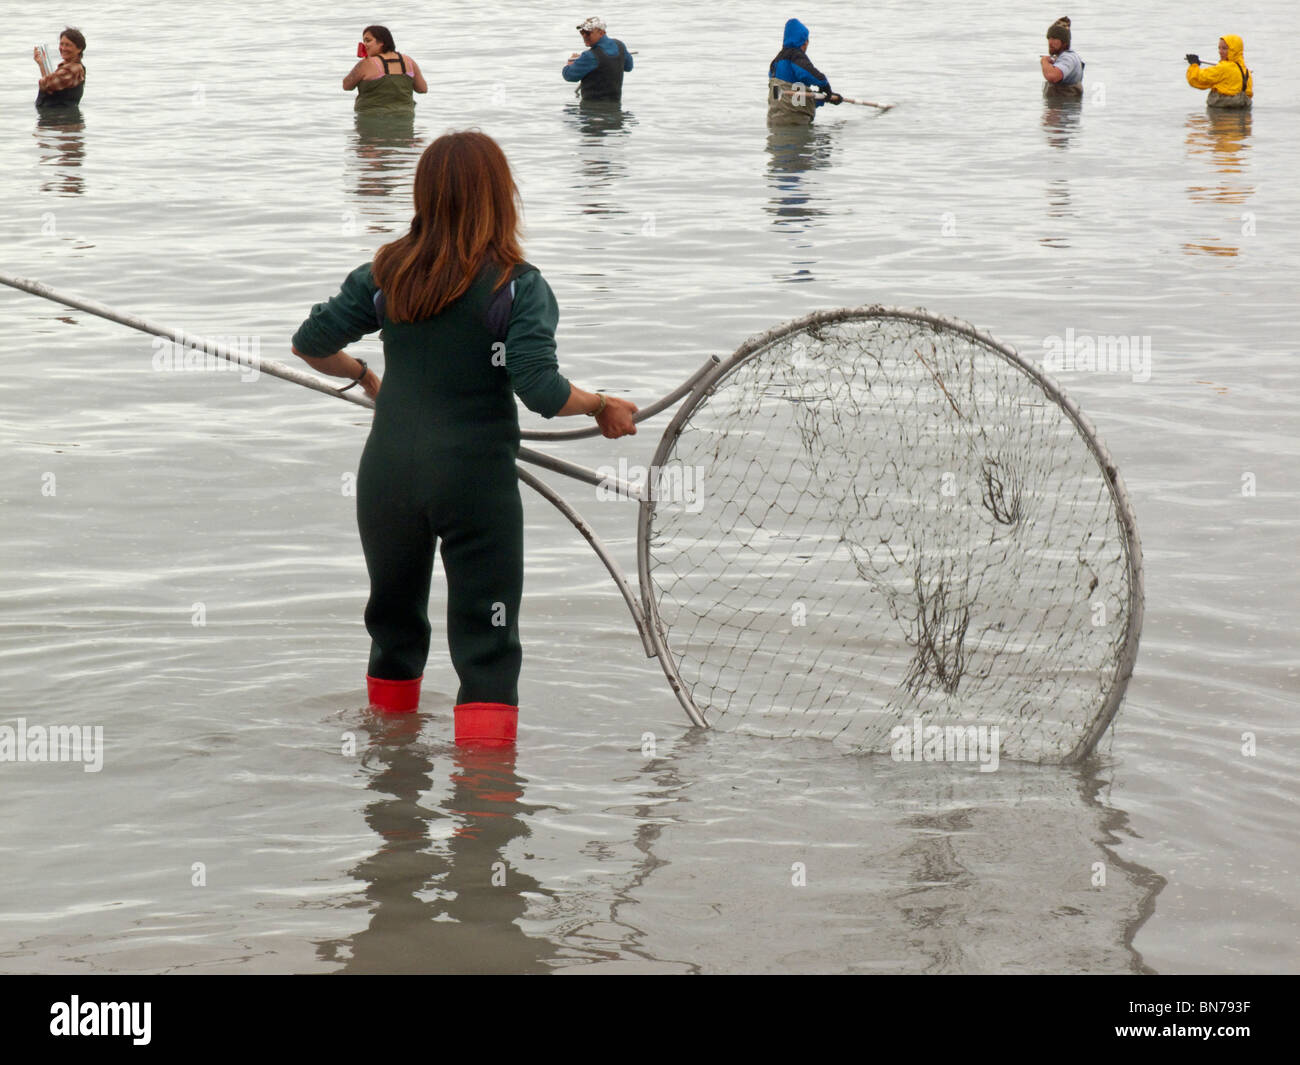 Crowd of people dip net on the Kenai River during Summer, Kenai